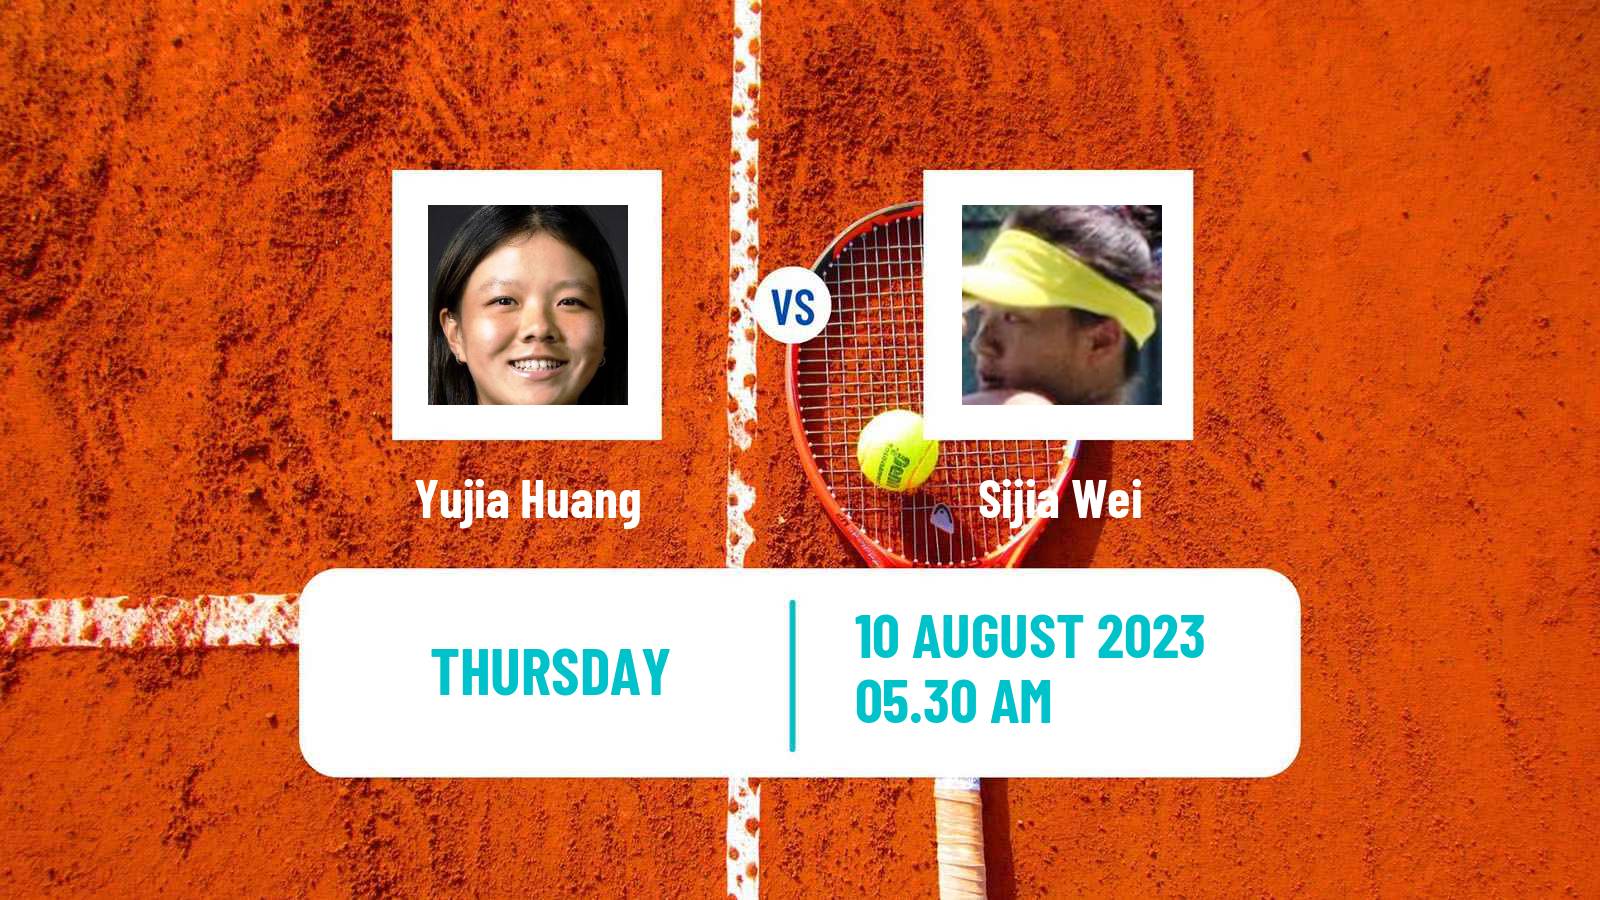 Tennis ITF W40 Anning Women Yujia Huang - Sijia Wei